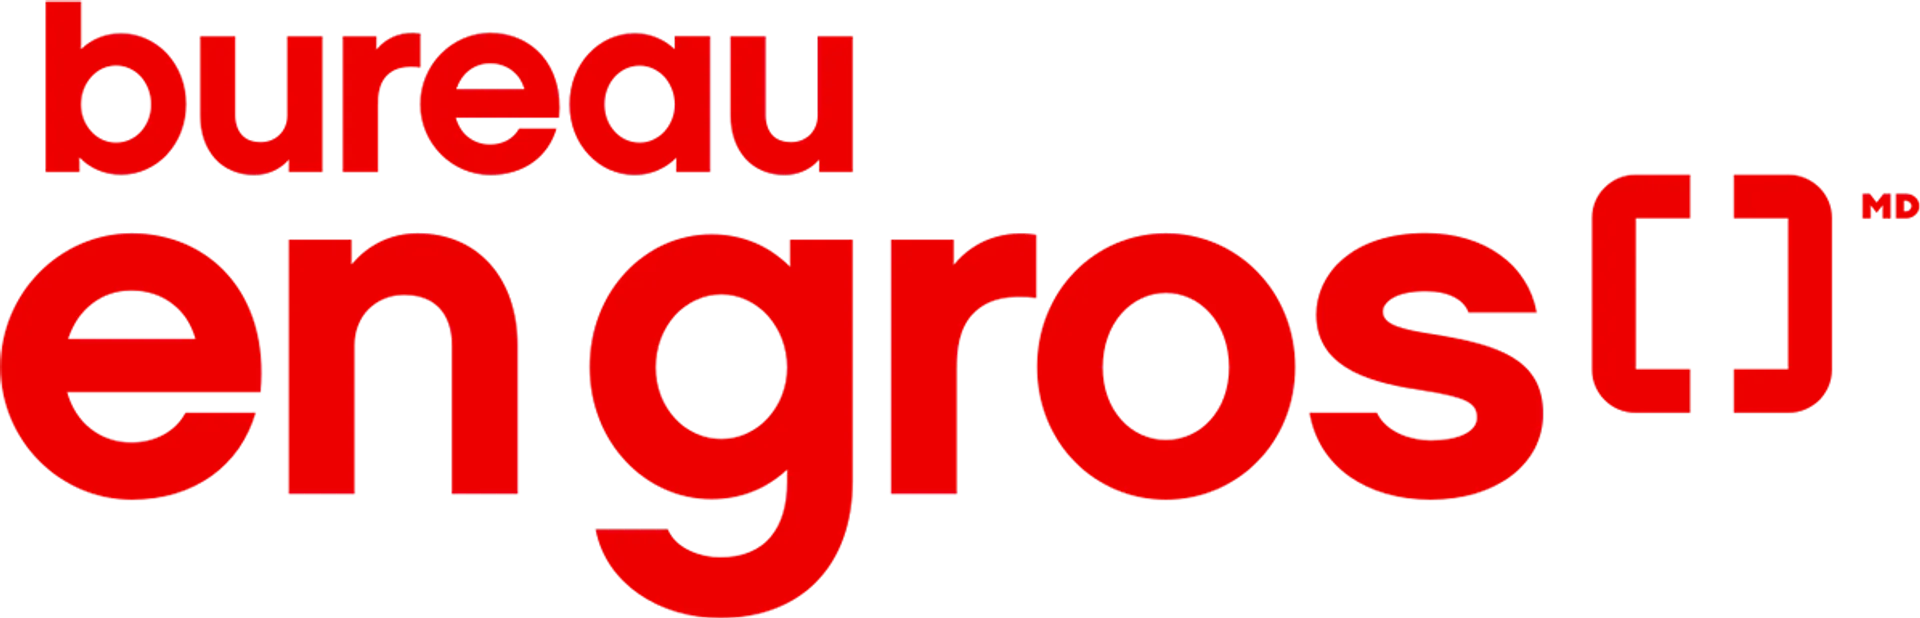 BUREAU EN GROS logo de circulaire